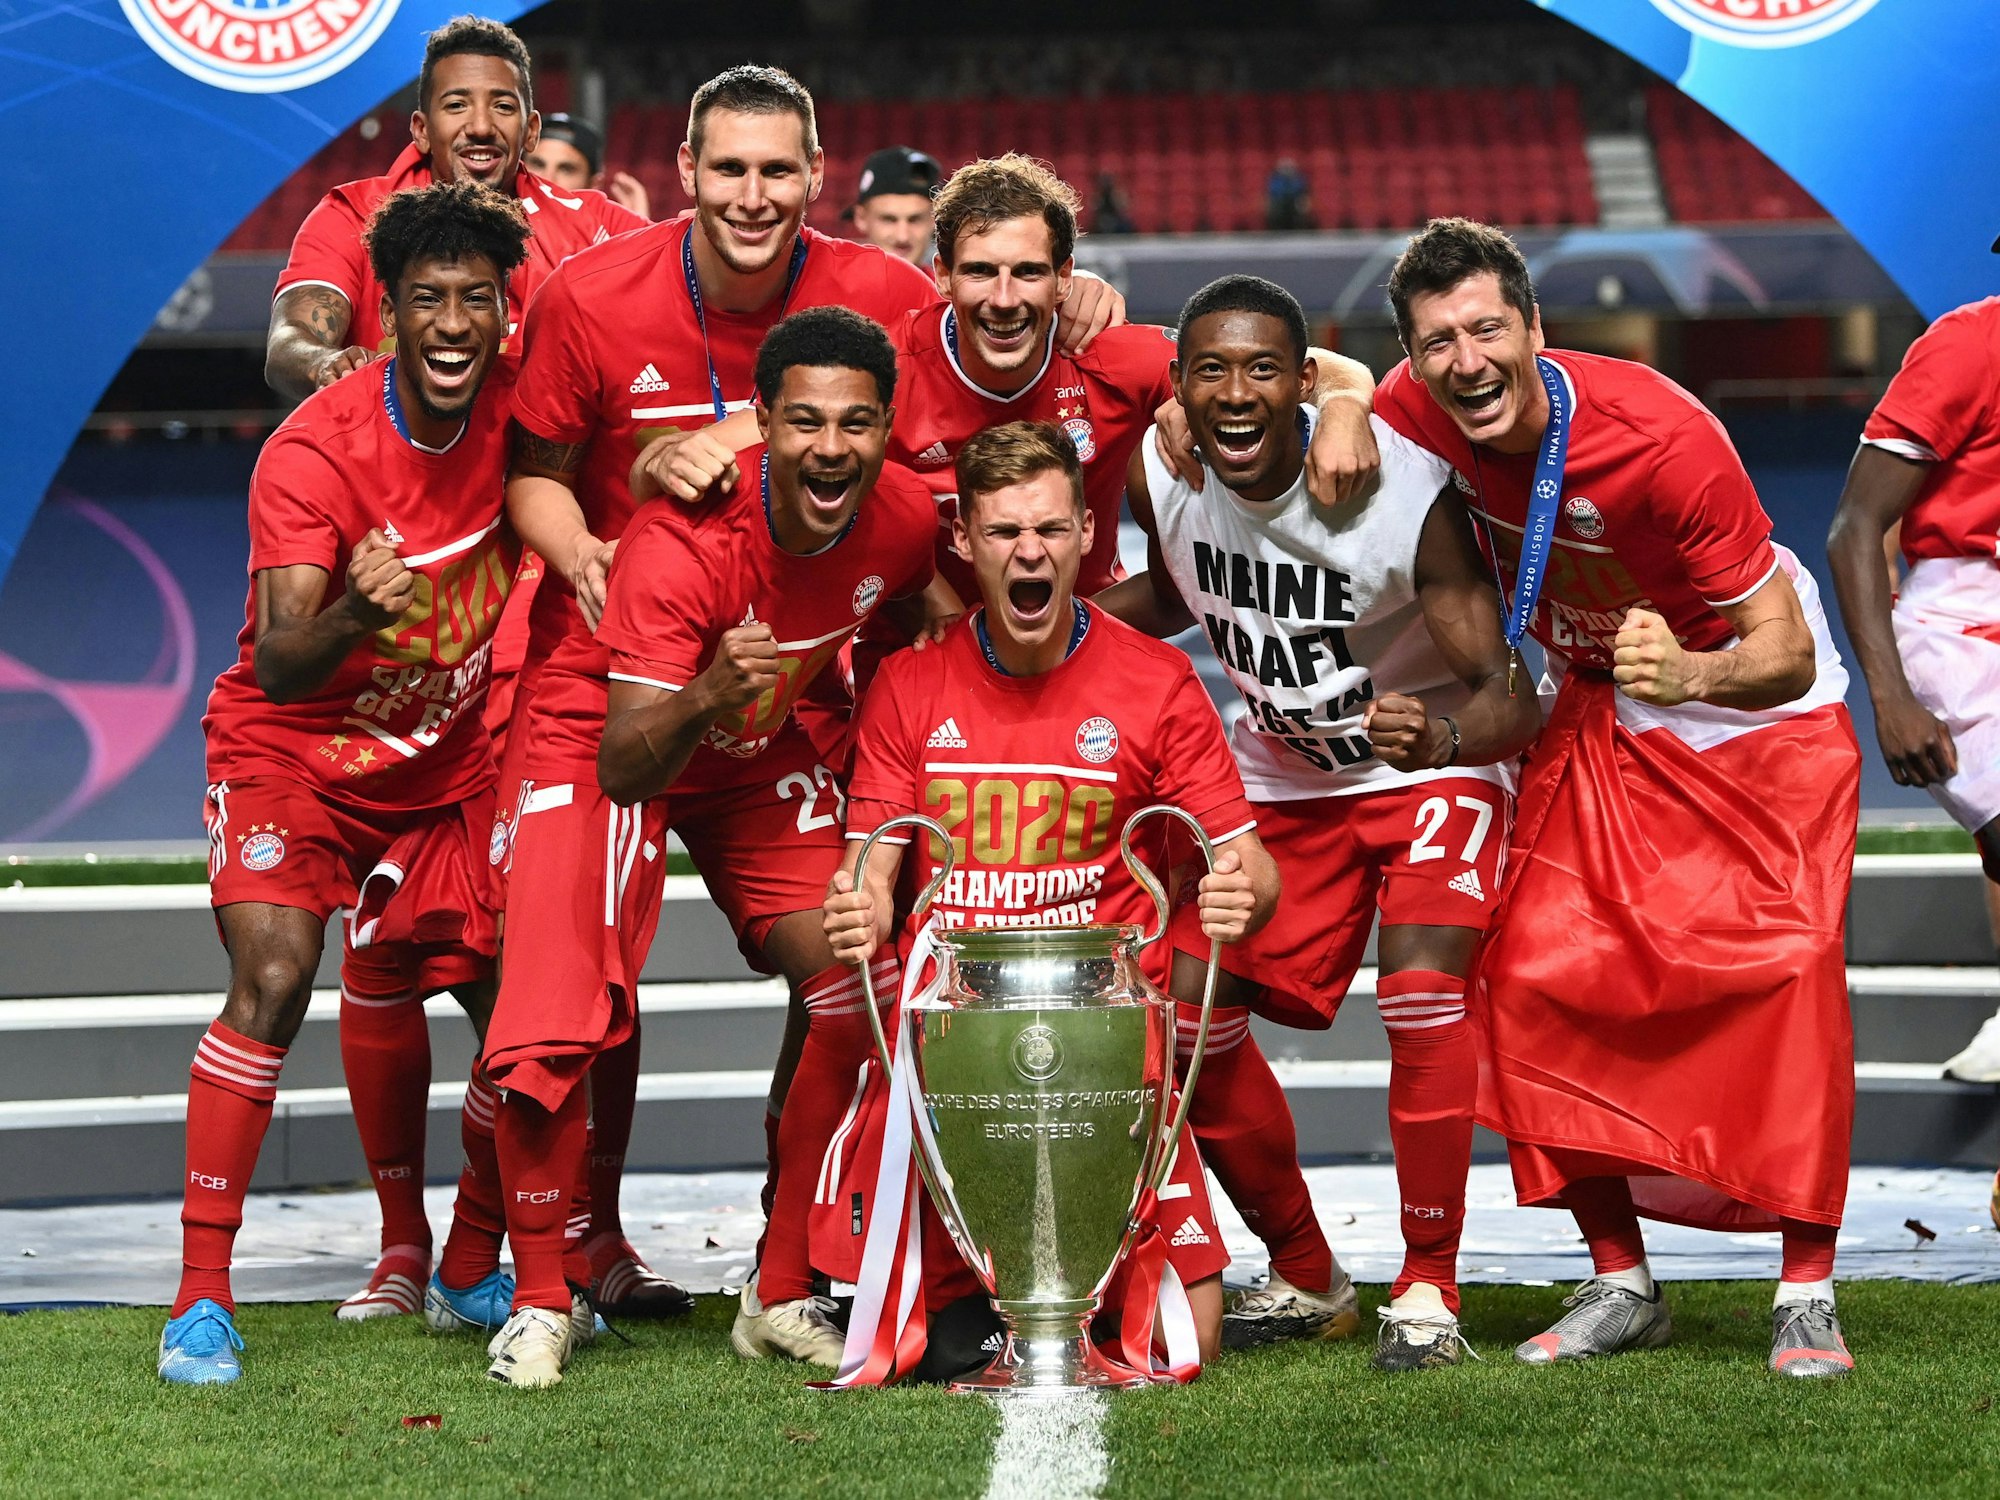 Die Münchner feiern ihren Triumph mit dem Pokal.